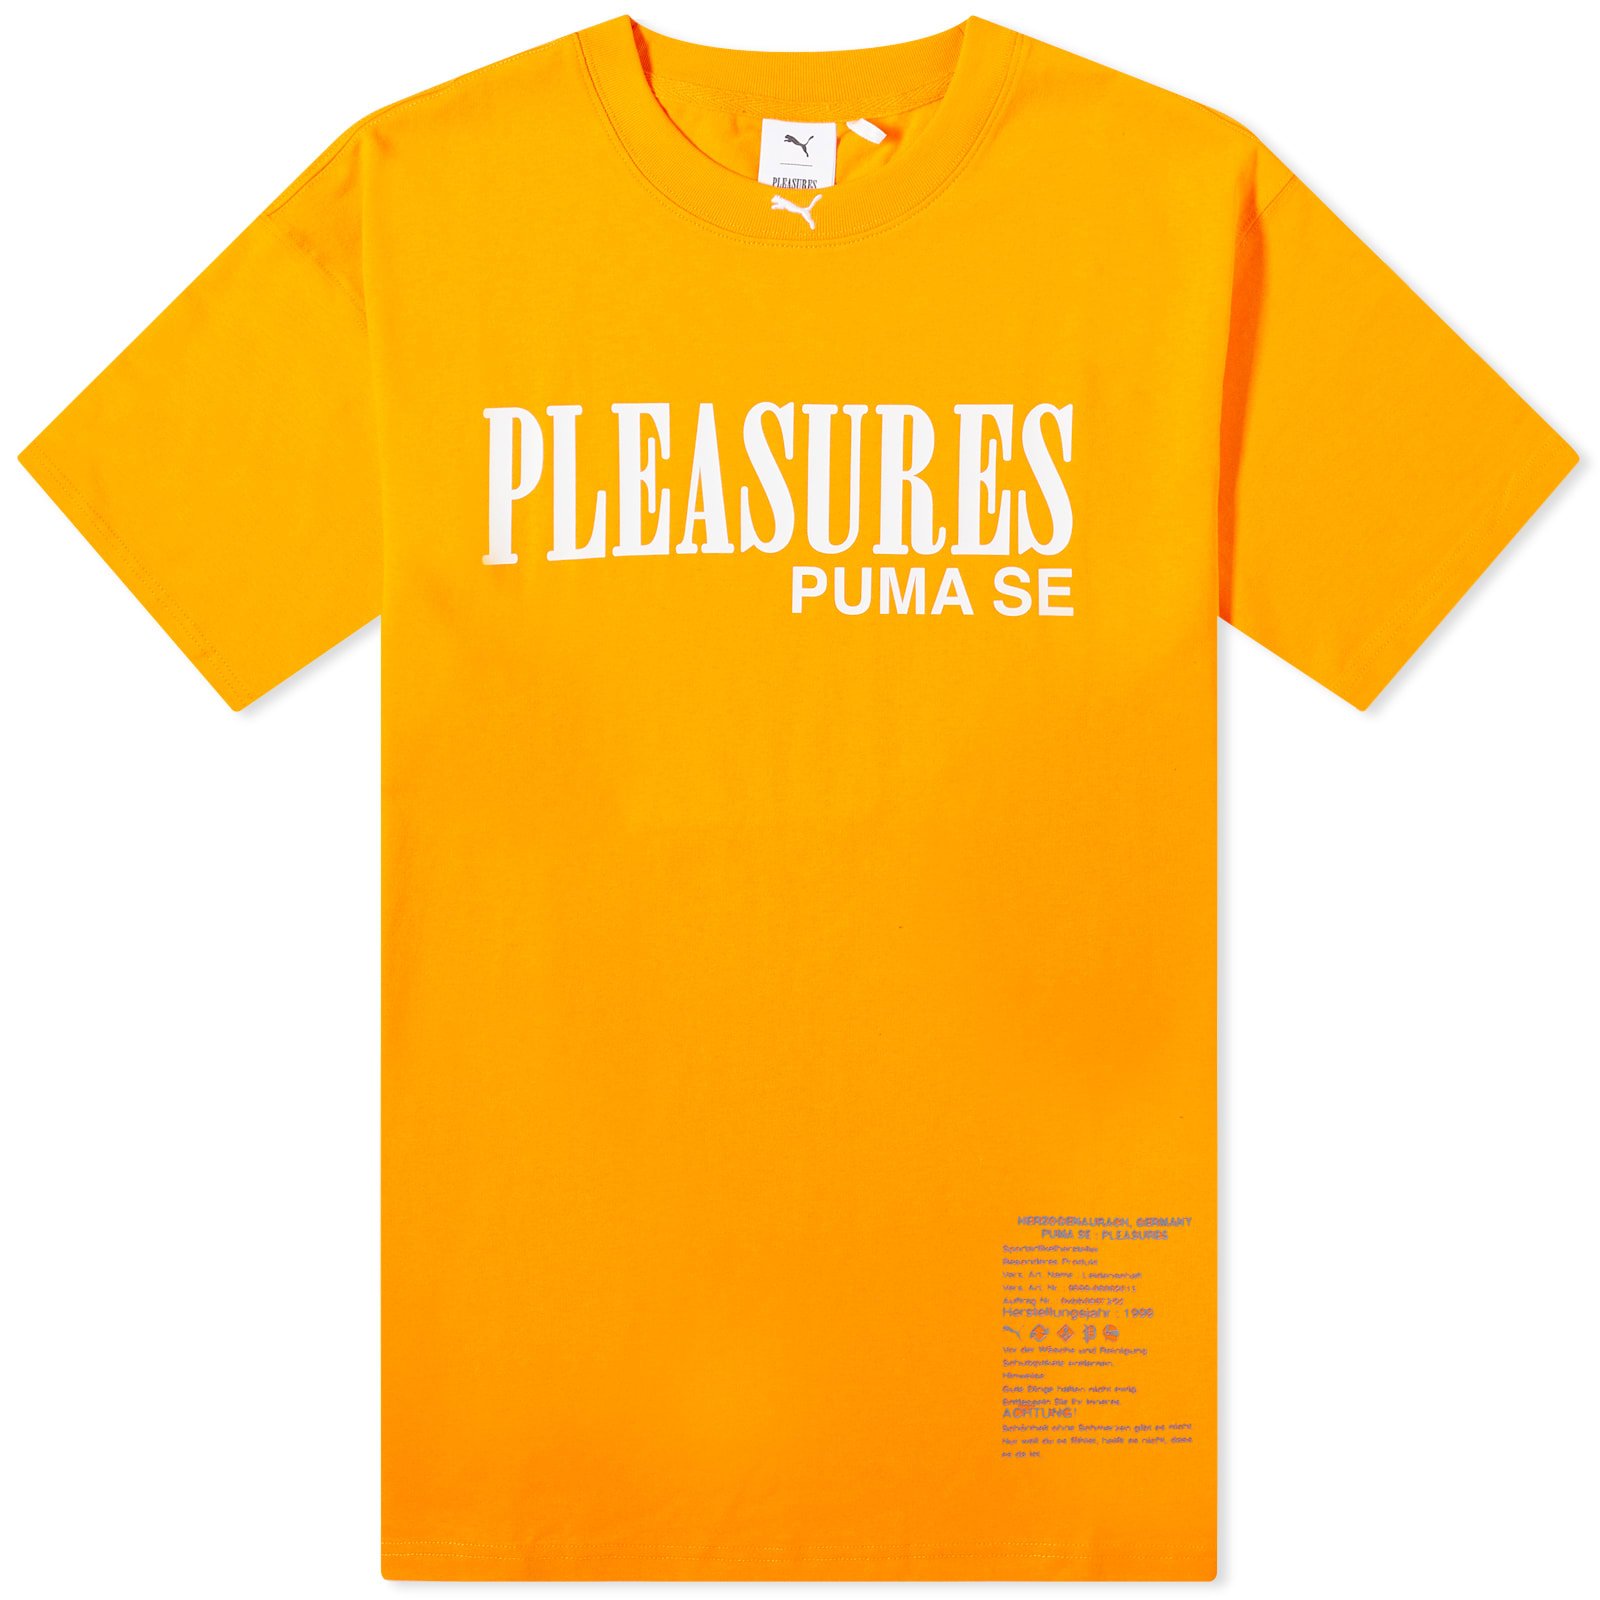 x Pleasures Typo